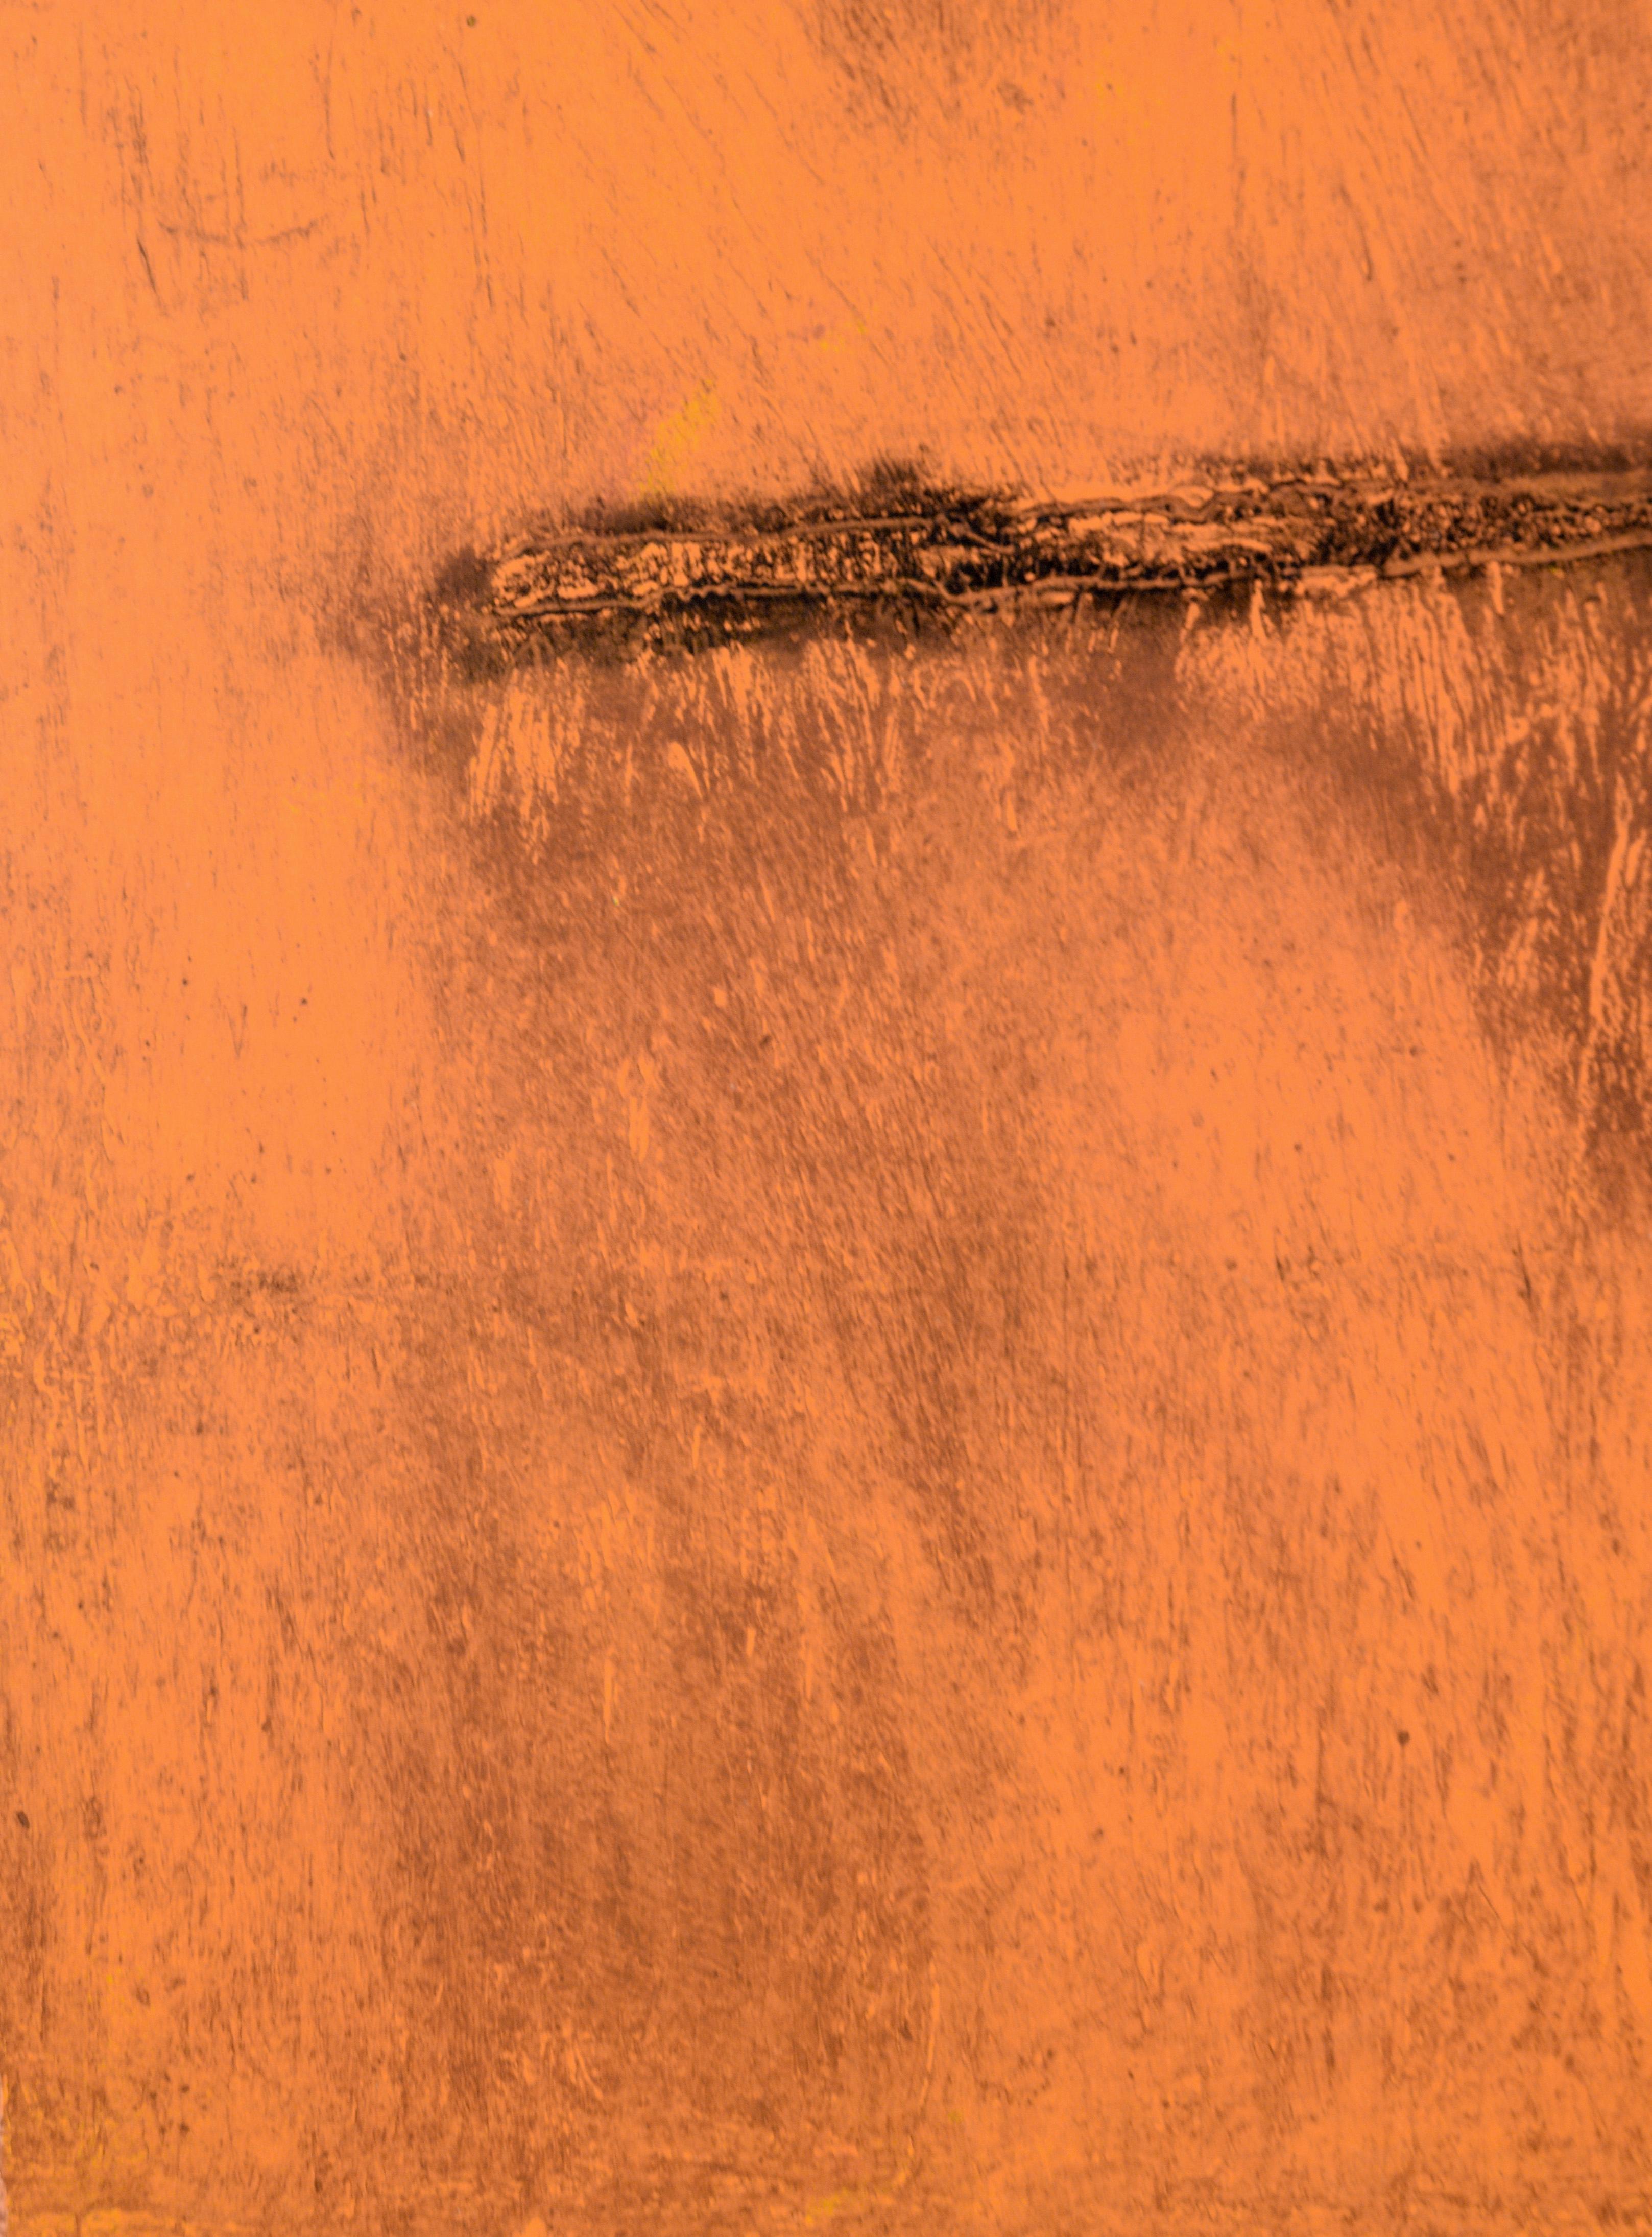 Orange Deadpan – Monodruck EV auf Papier

Original-Transfer-Monotypie-Gemälde der kalifornischen Künstlerin Heather Speck (Amerikanerin, 20. Jh.), stark strukturiert in Schattierungen von verbranntem Orange.

In der rechten unteren Ecke paraphiert